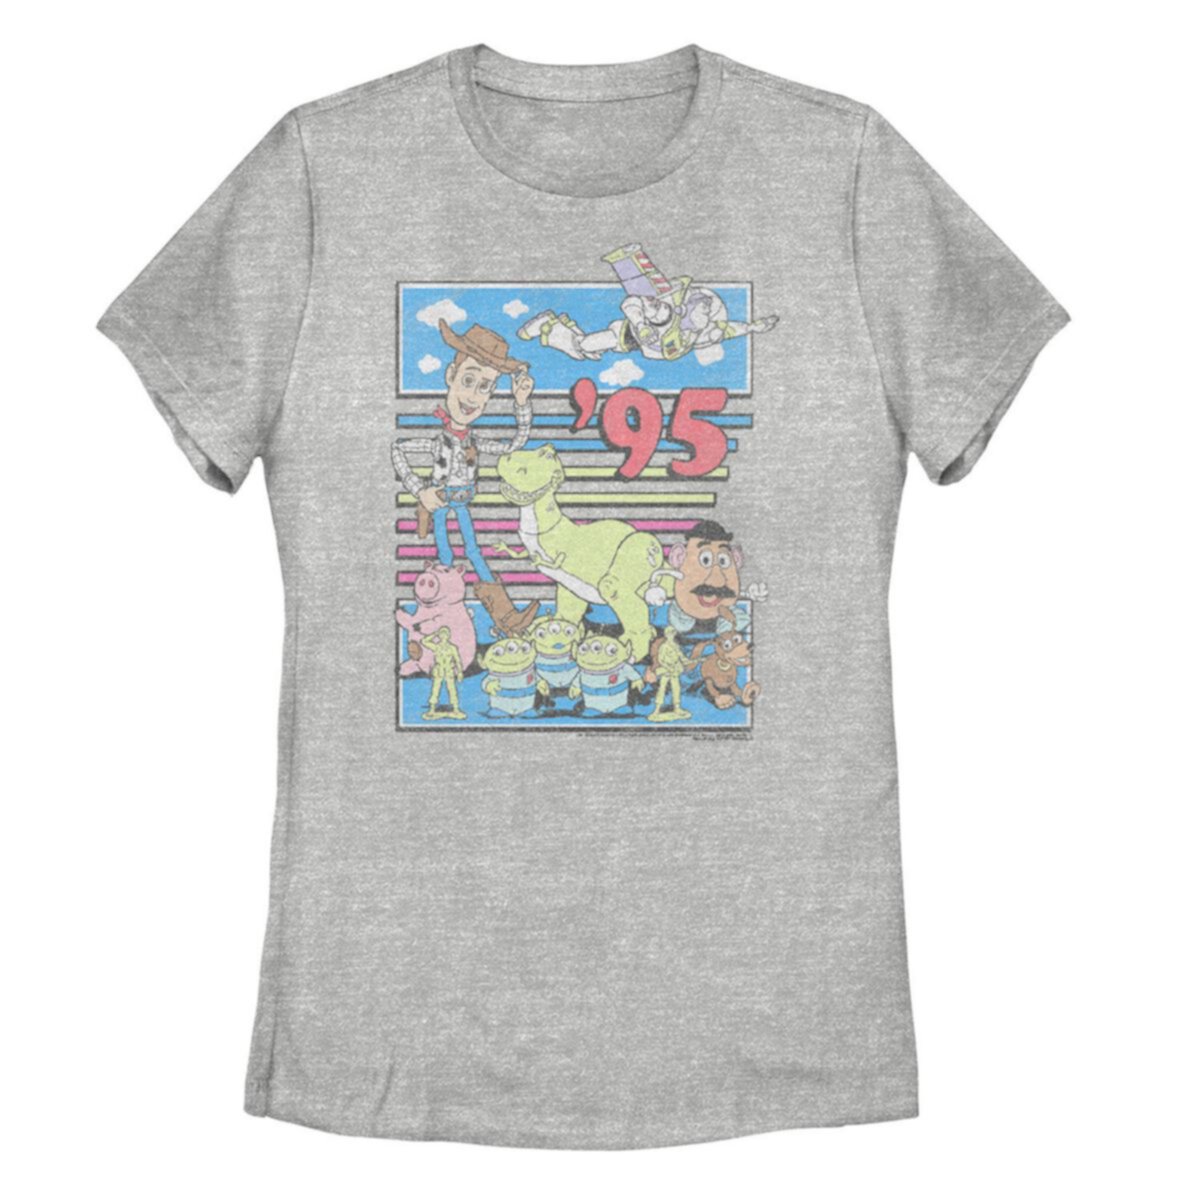 Красочная футболка в стиле ретро для юниоров Disney / Pixar Toy Story '95 Disney